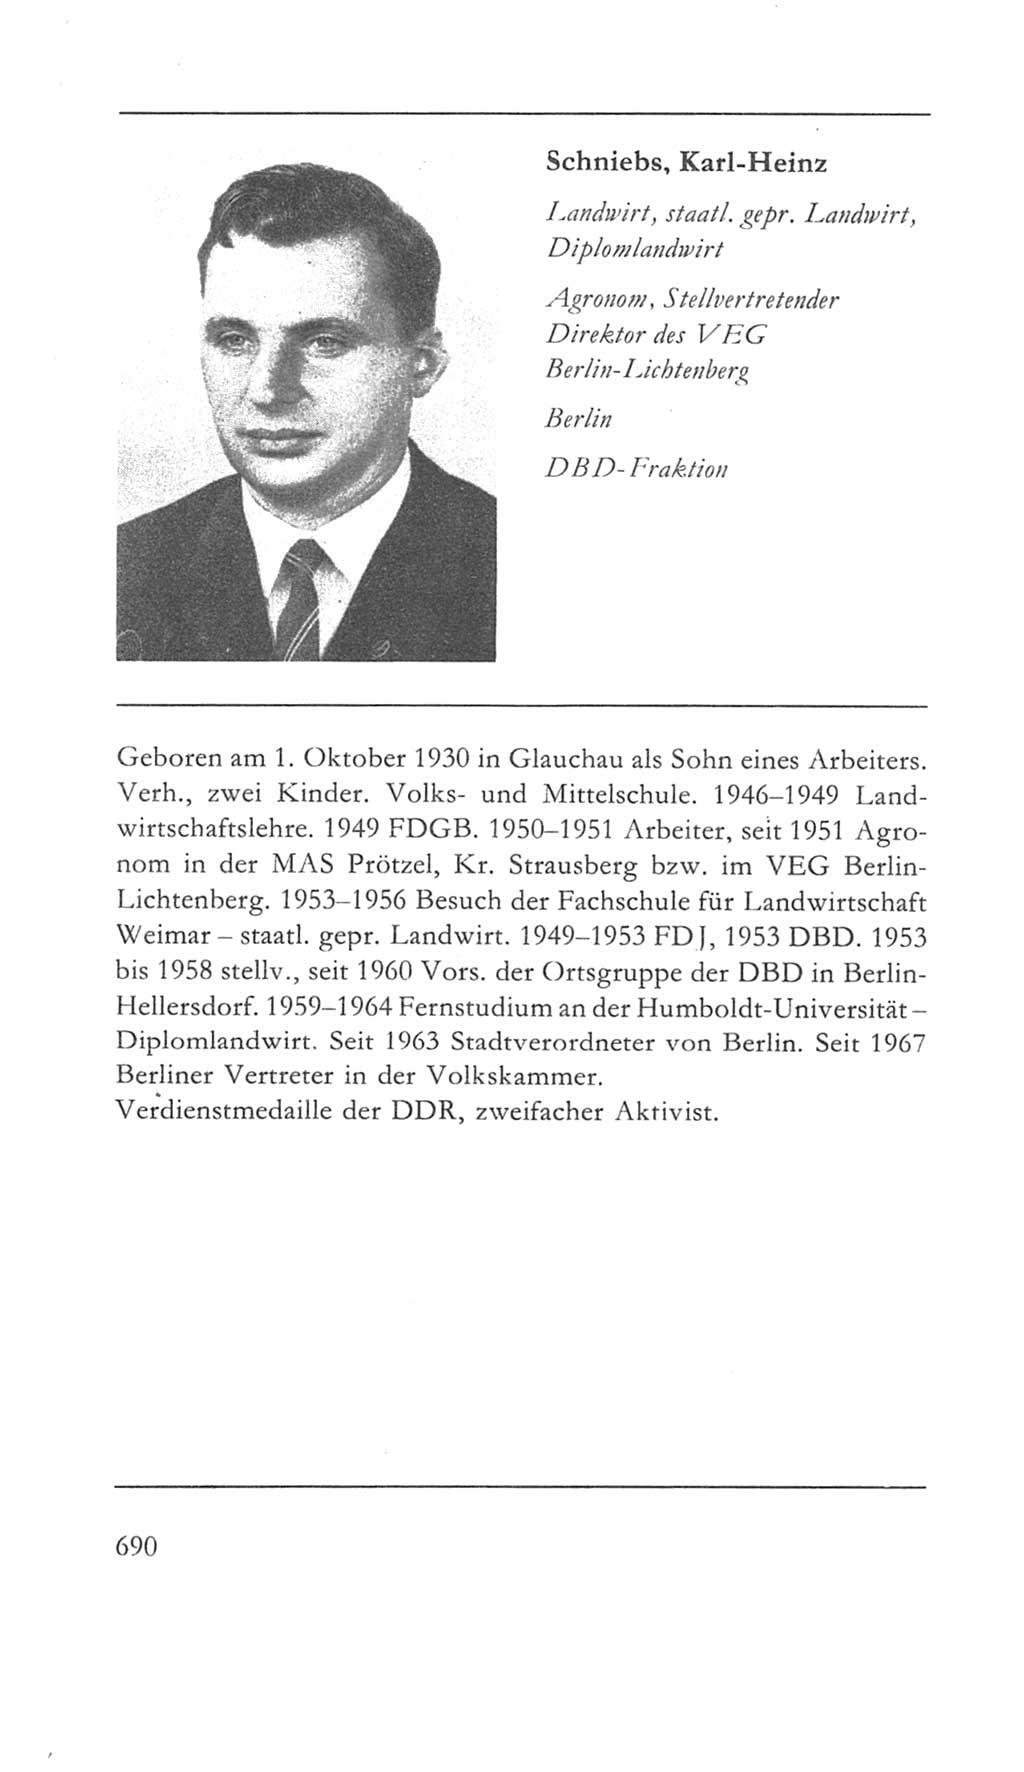 Volkskammer (VK) der Deutschen Demokratischen Republik (DDR) 5. Wahlperiode 1967-1971, Seite 690 (VK. DDR 5. WP. 1967-1971, S. 690)